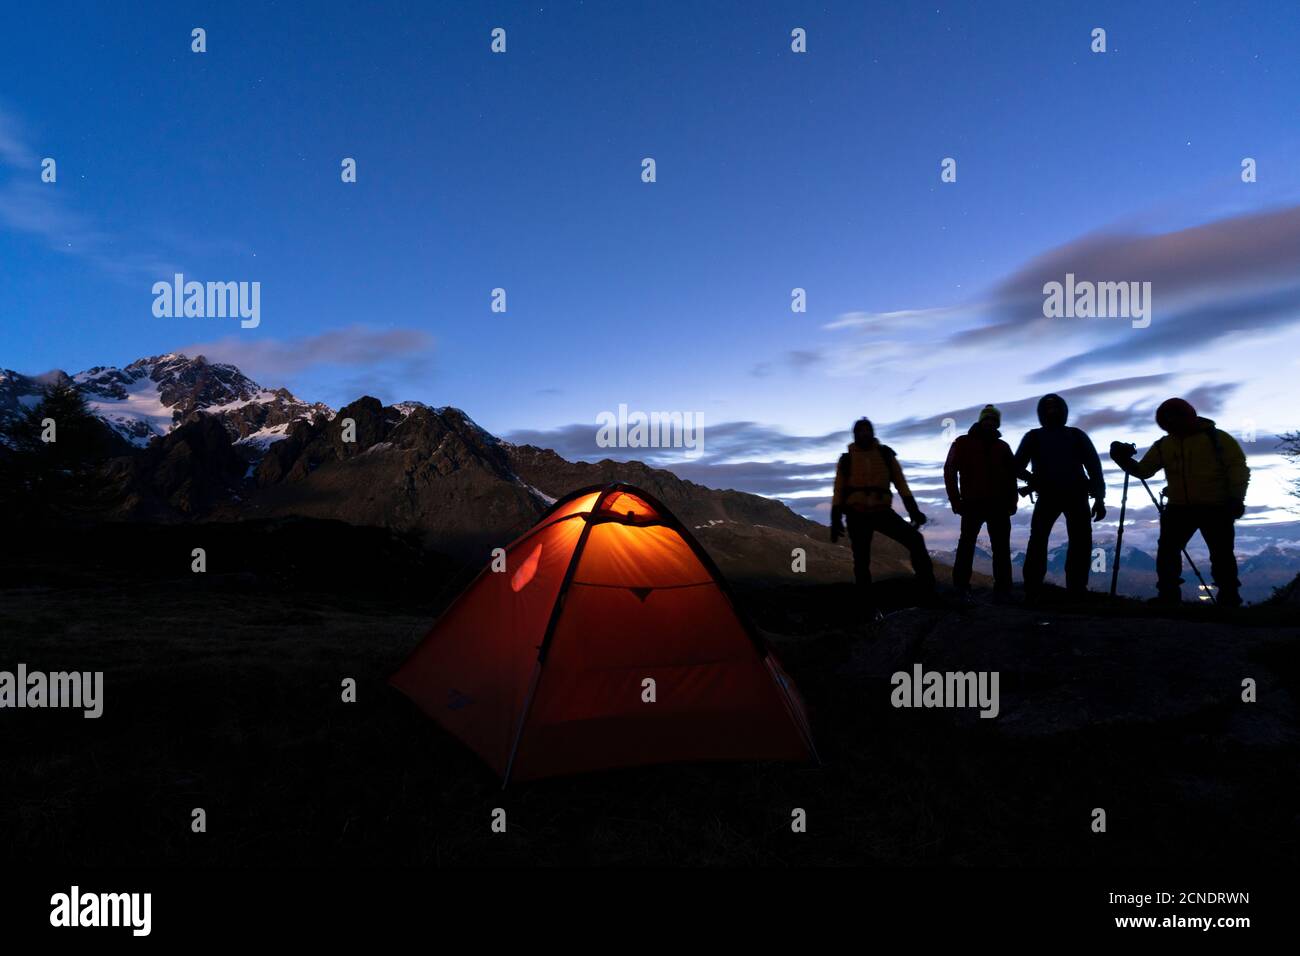 Escursionisti in campeggio con tenda fotografando Monte Disgrazia di notte, Valmalenco, provincia di Sondrio, Valtellina, Lombardia, Italia, Europa Foto Stock